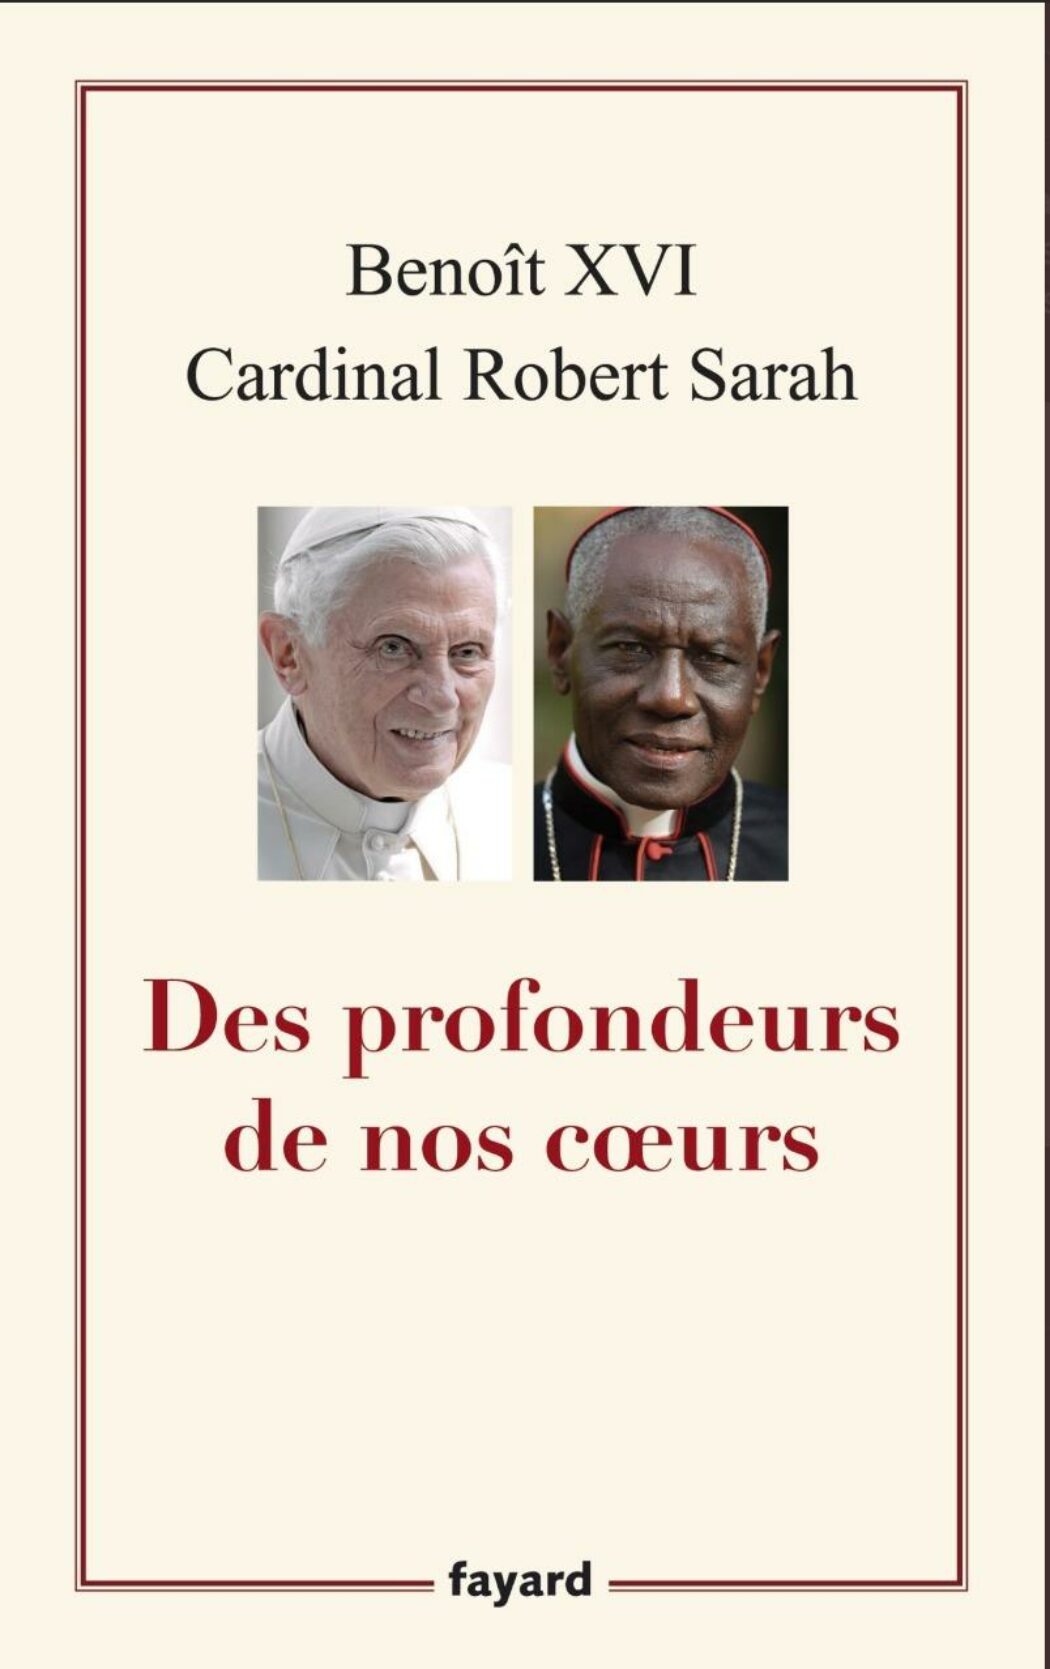 Le communiqué du cardinal Sarah suite aux intox contre Benoît XVI